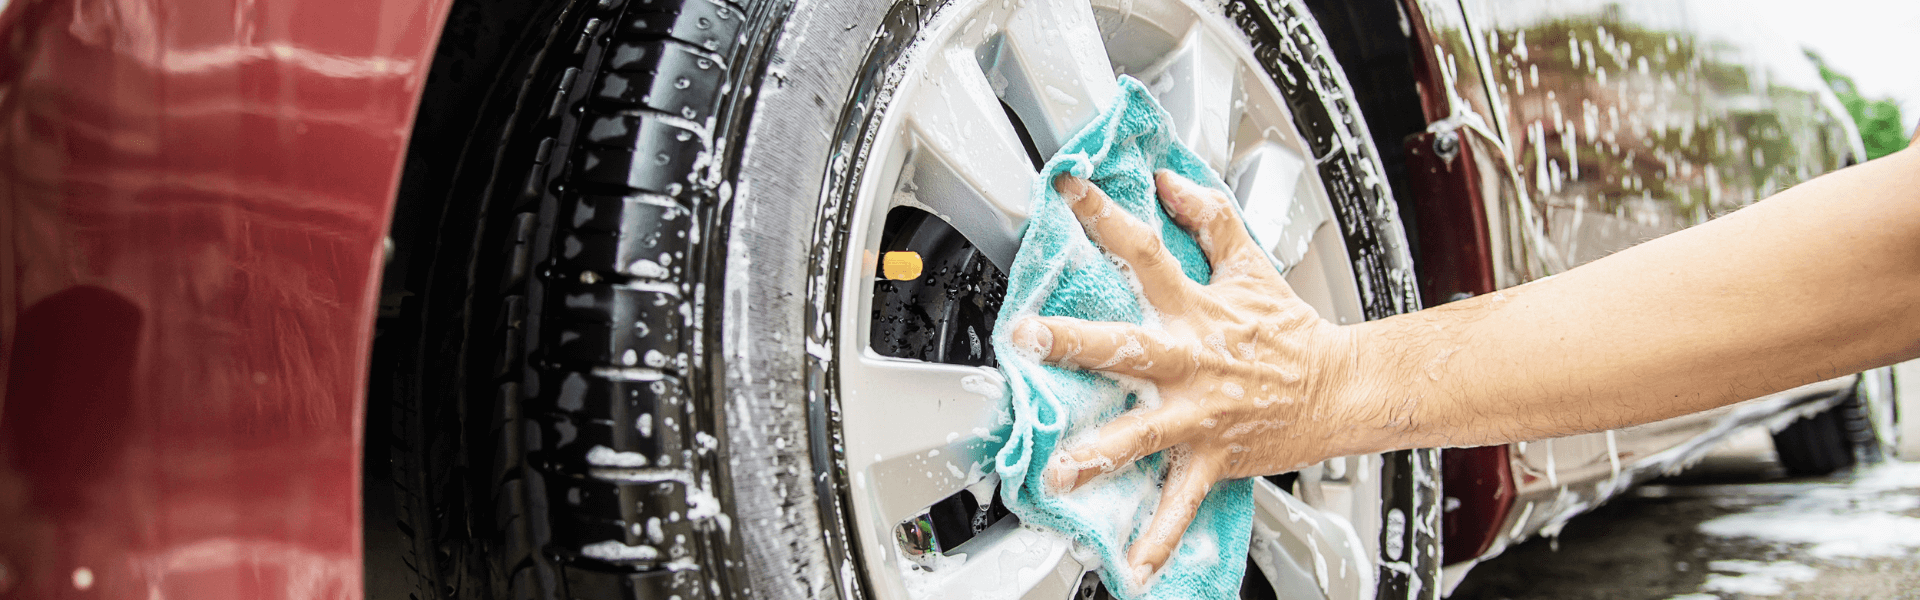 como lavar carros corretamente